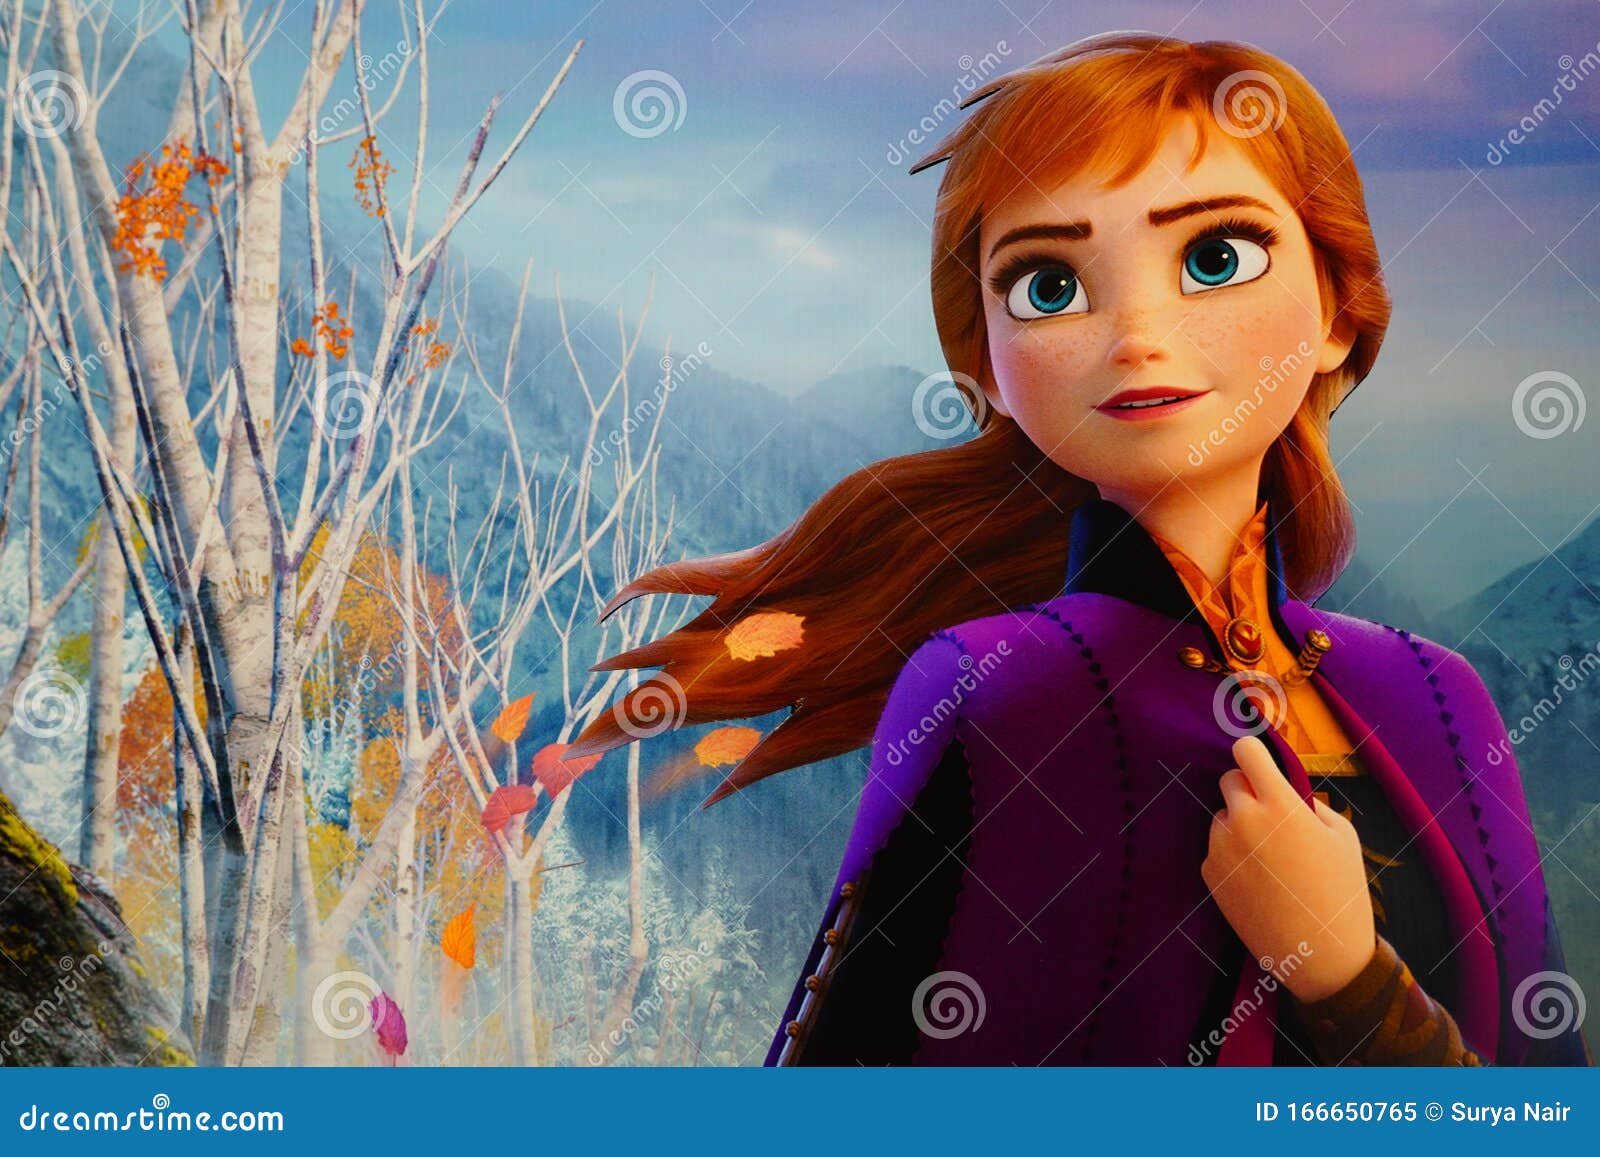 1,018 Frozen Movie Stock Photos - Free & Royalty-Free Stock Photos ...